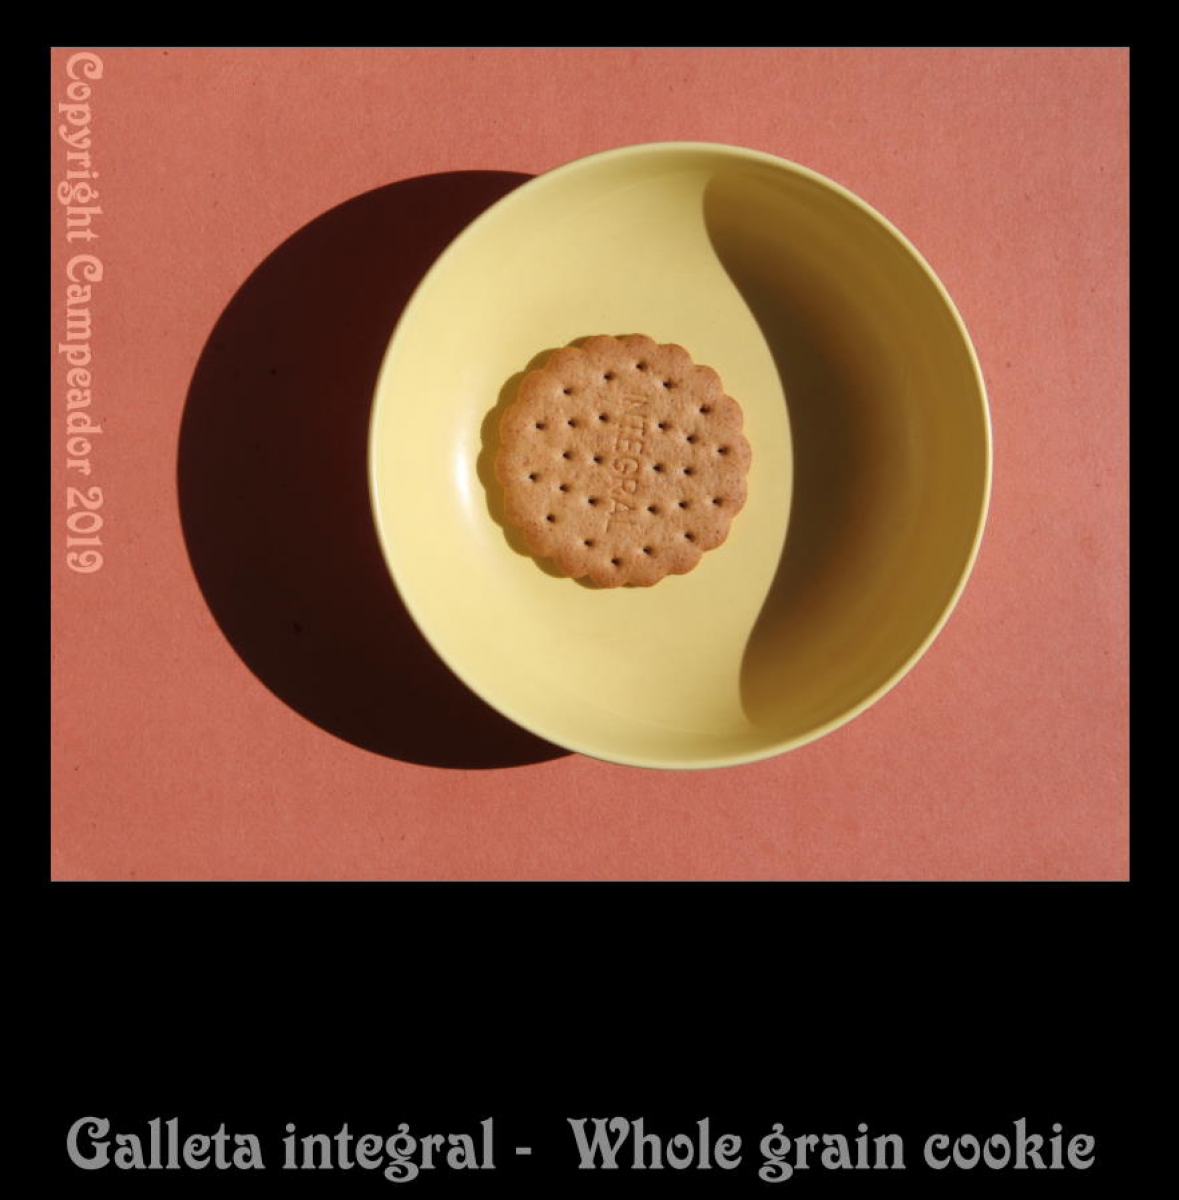 Galleta integral - Whole grain cookie.  Photo by Campeador.